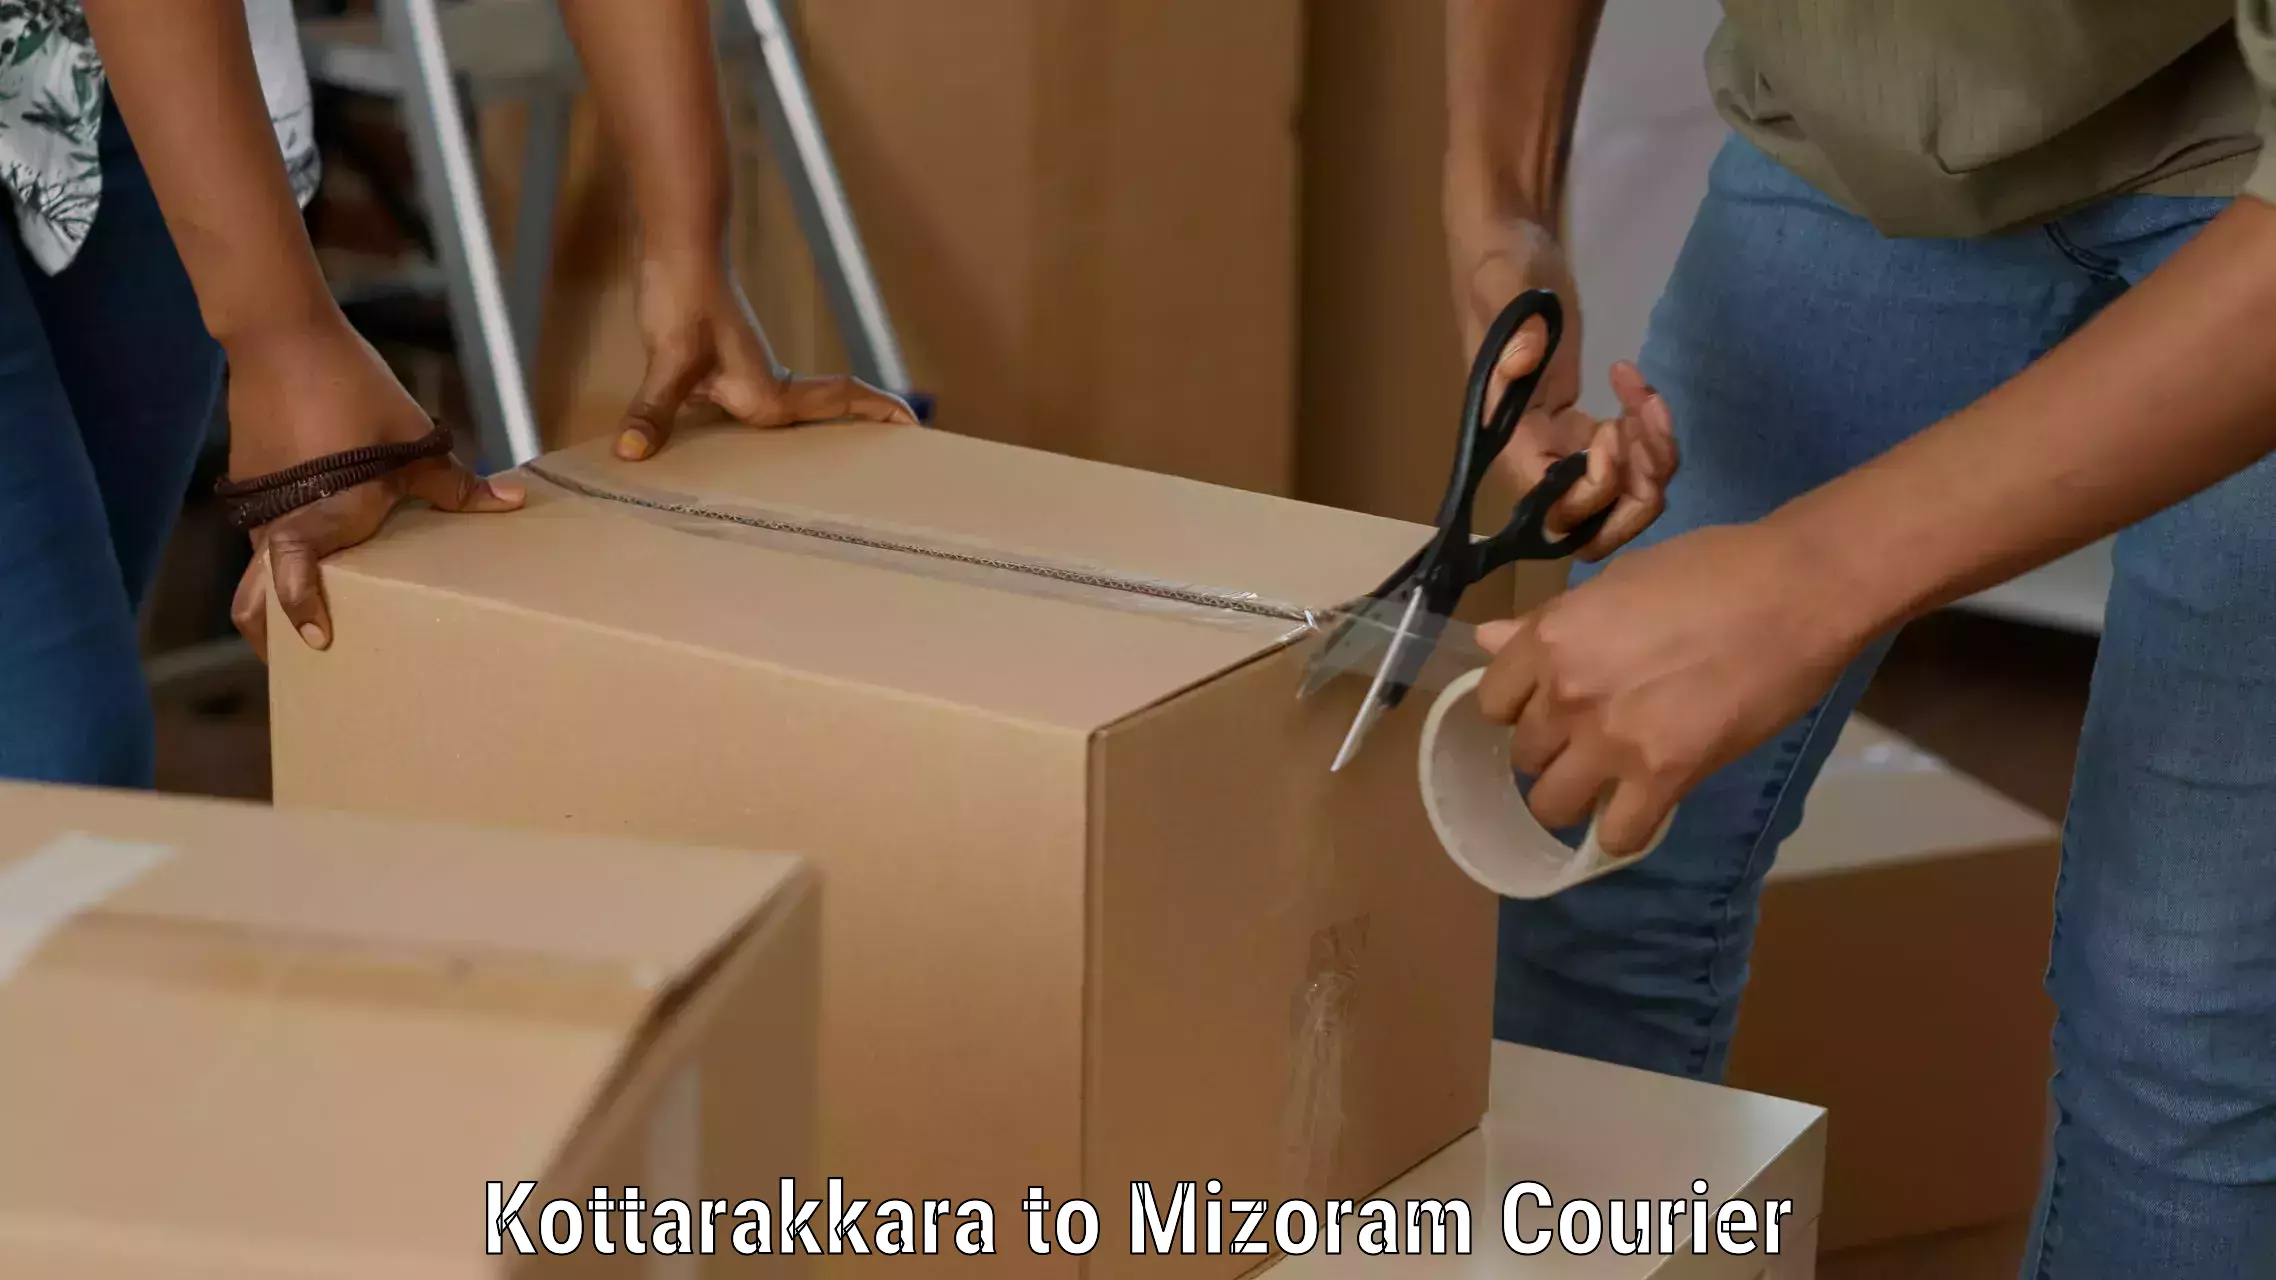 Next-day freight services Kottarakkara to Mizoram